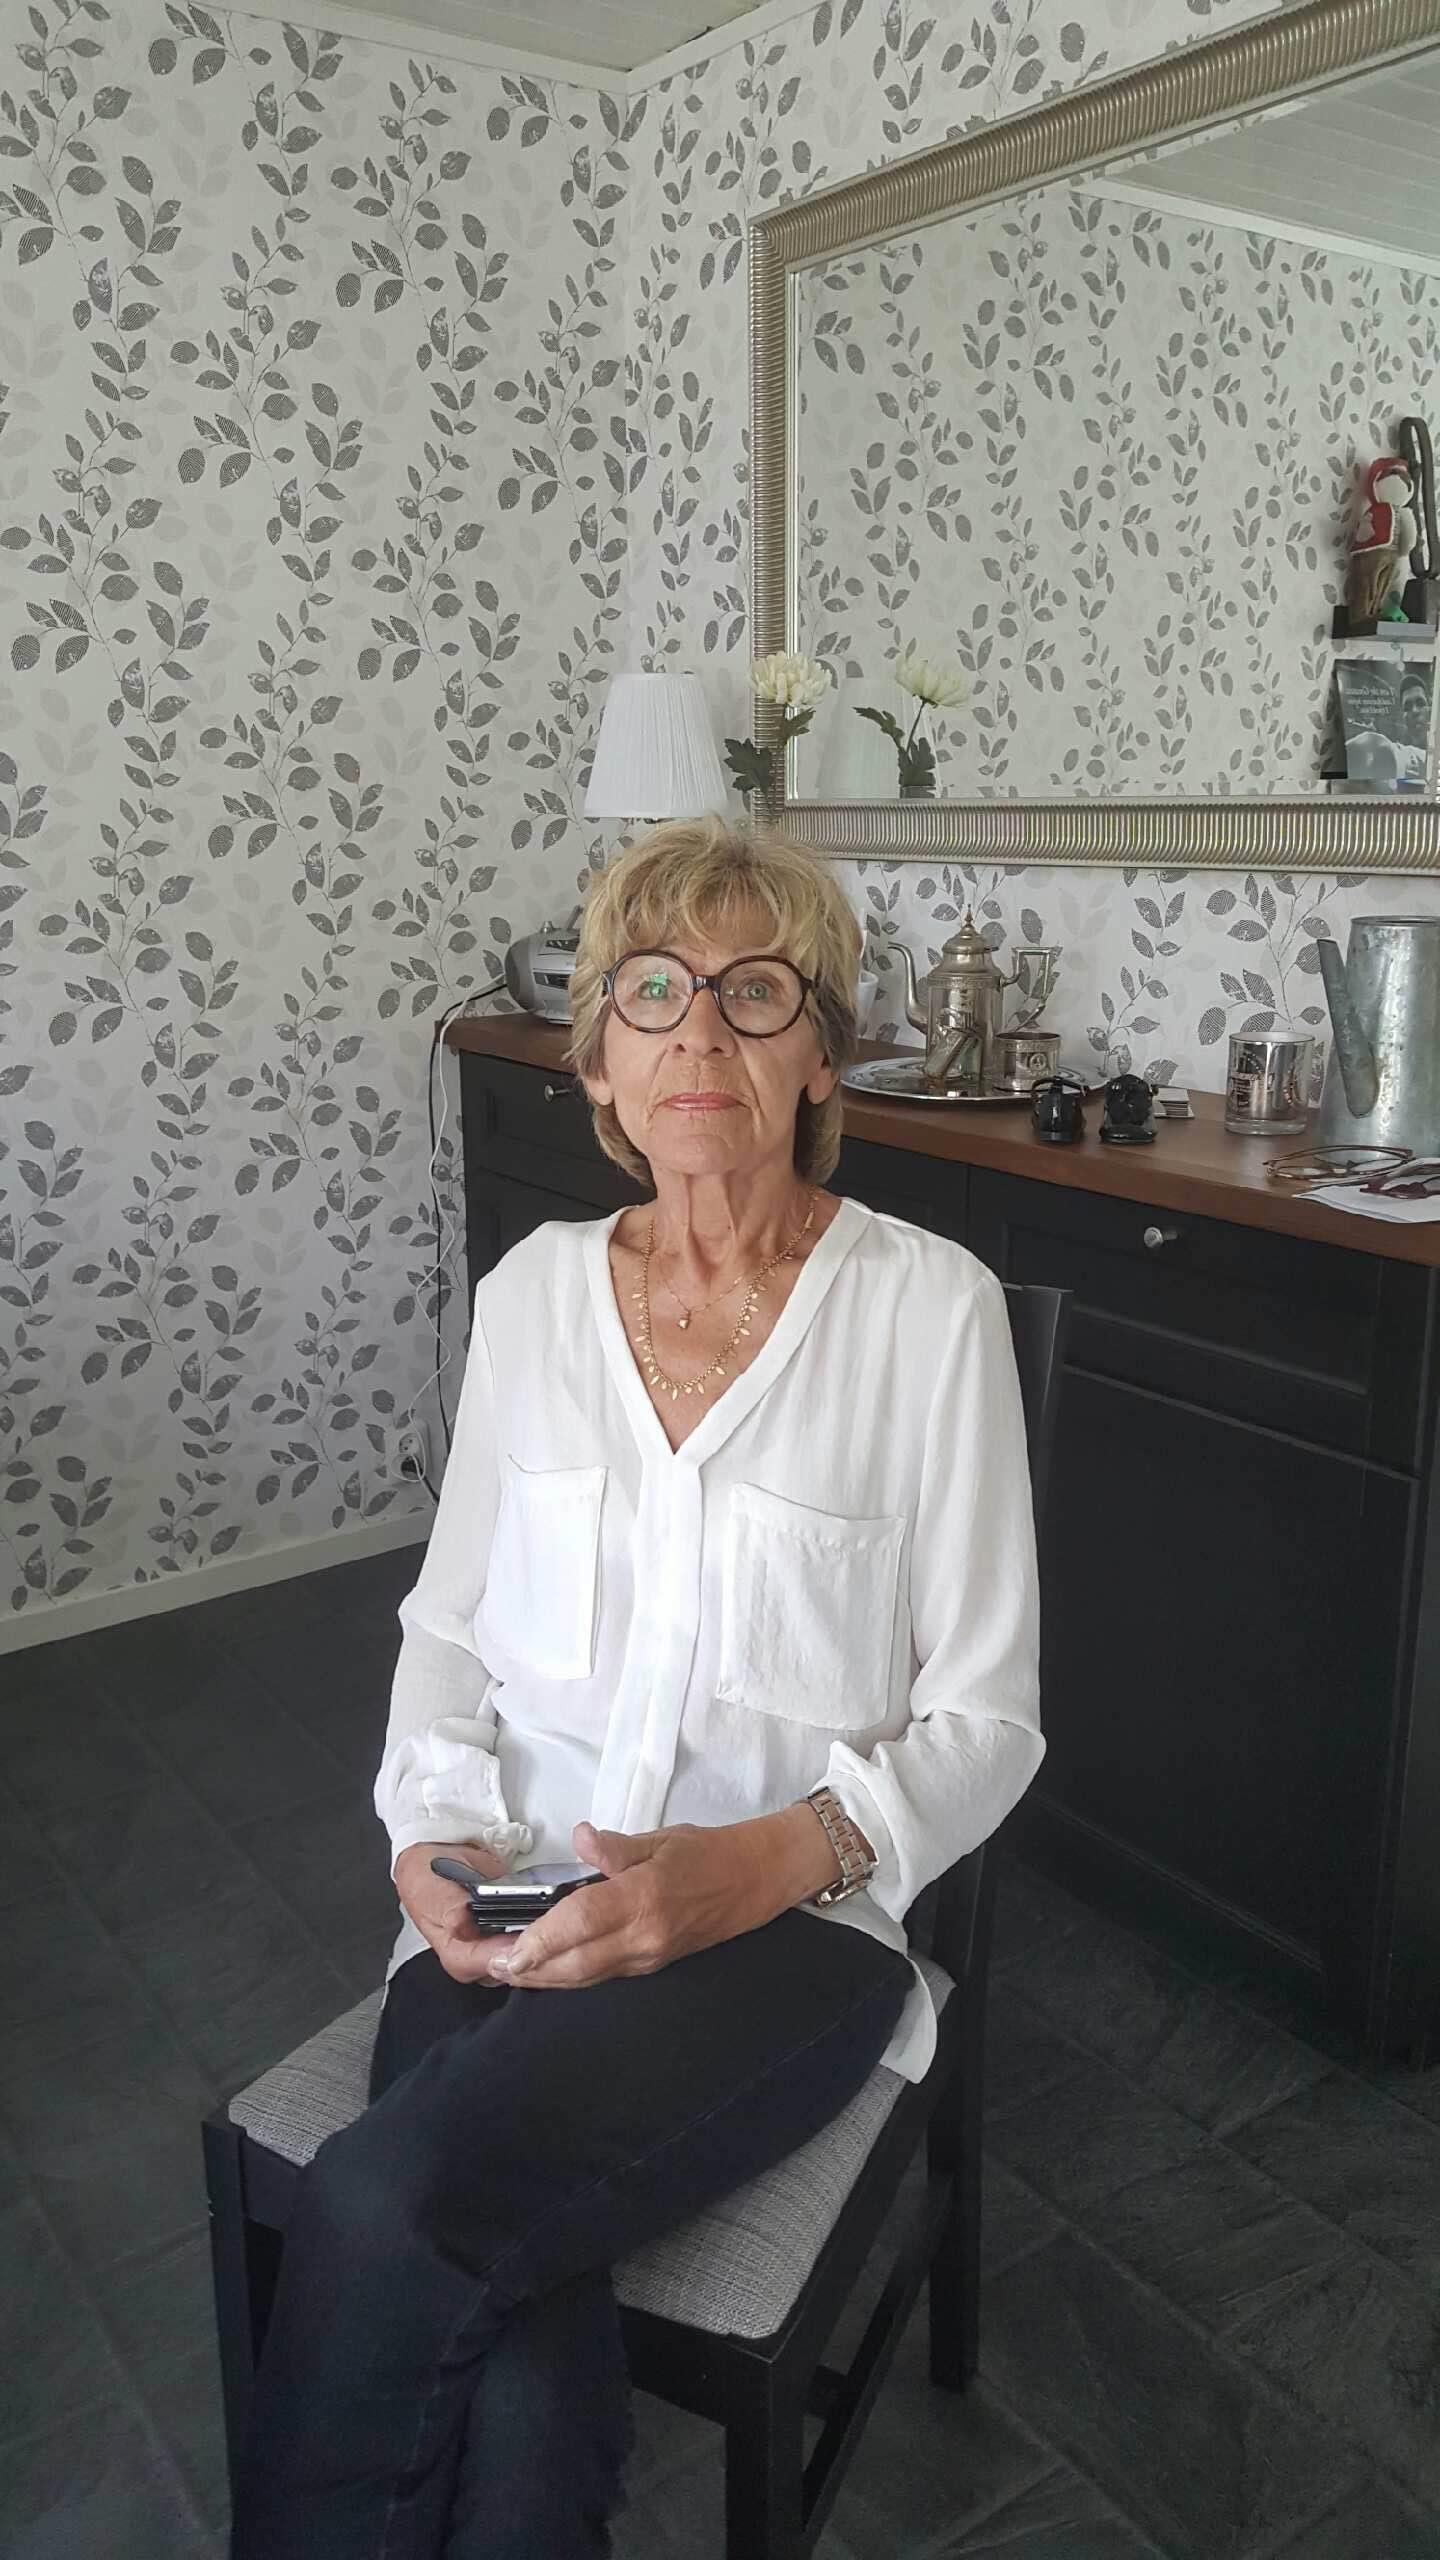 Cancersjuka Solbritt Björkstrand, 72, från Sundsvall skulle ha opererats för sin bukspottkörtelcancer. Men fick vända i dörren på grund av platsbrist. ”Jag sa till honom att du skickar hem mig med en dödsdom. Då svarade han bara att så kan det vara.”